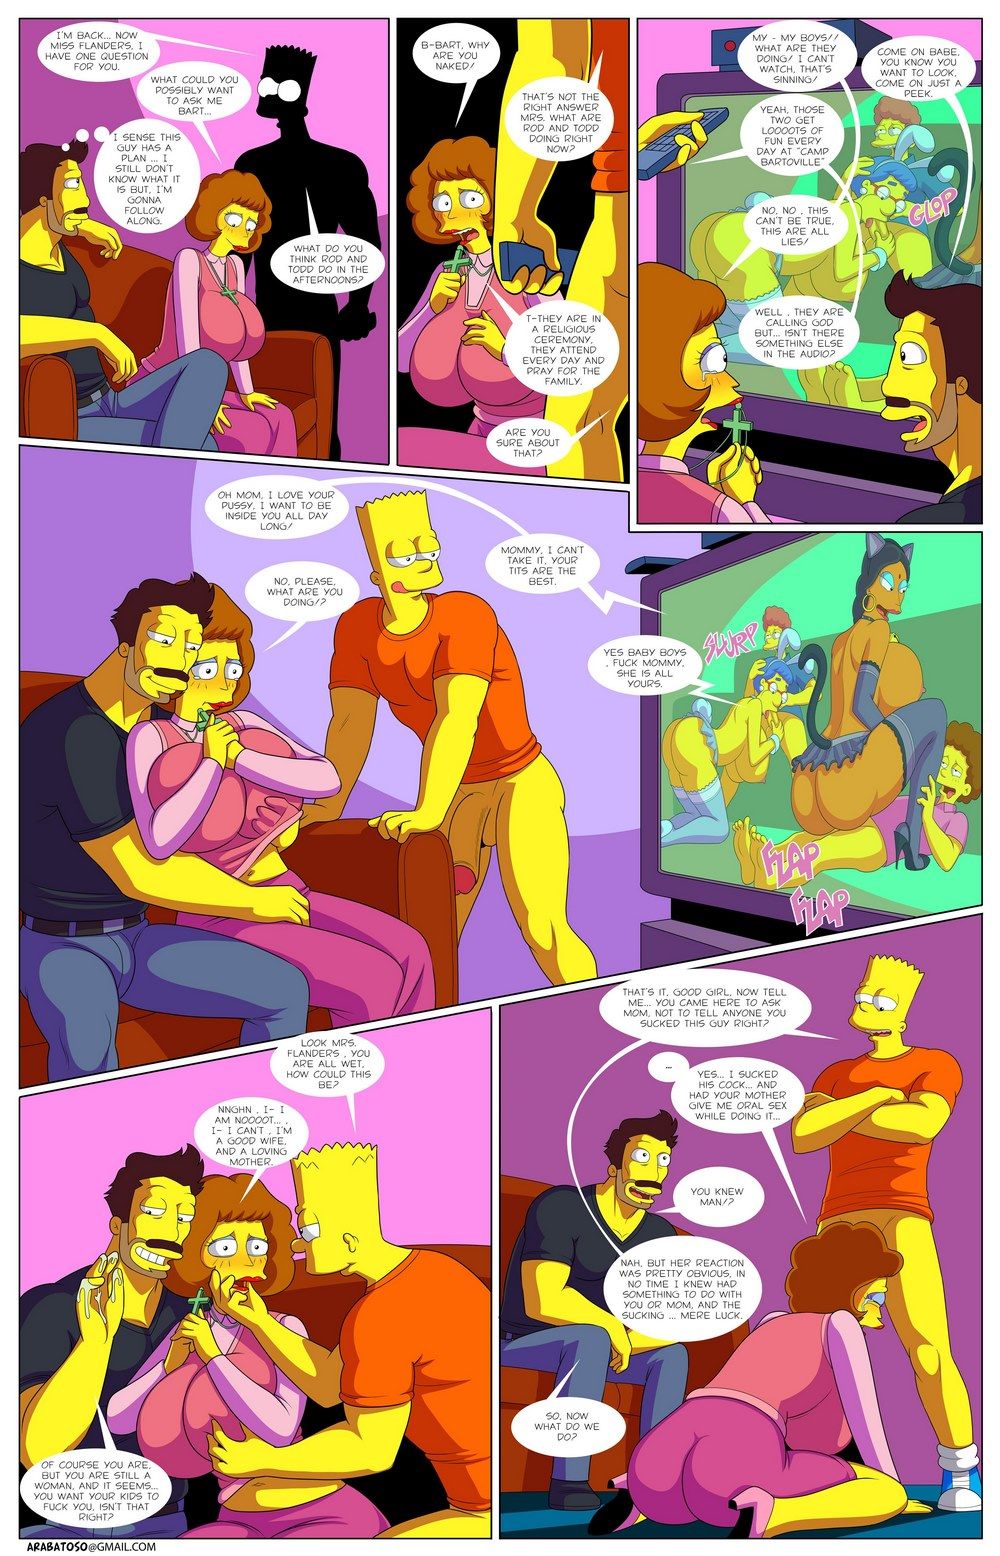 Arabatos - Darren's Adventure 2,Simpsons page 22